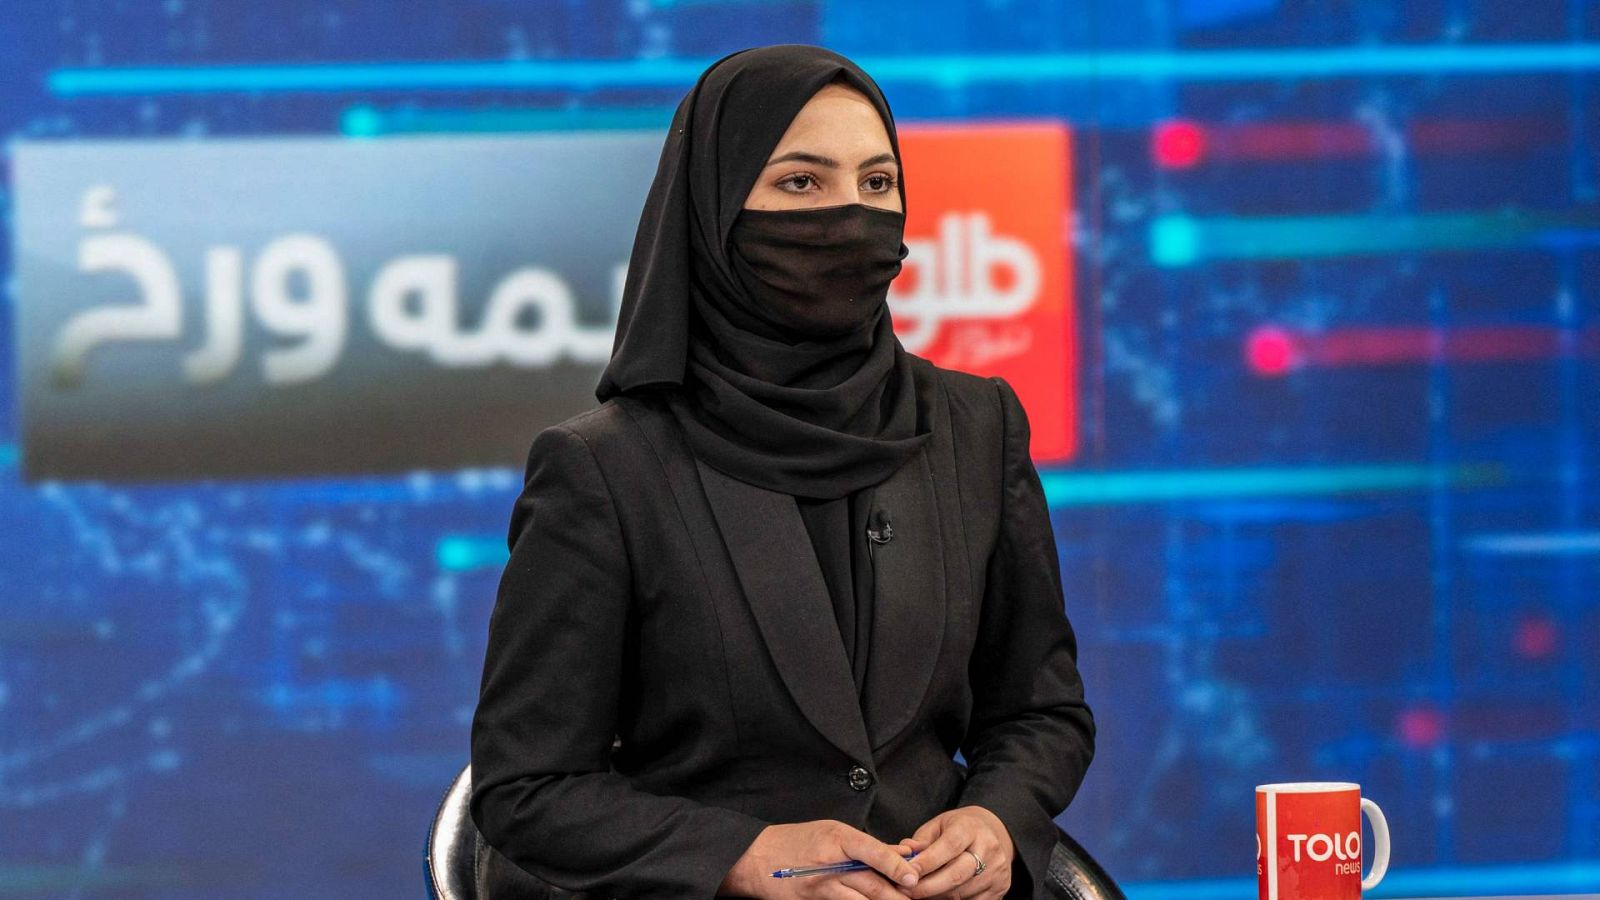 Afganistán | Las mujeres se cubren el rostro en televisión tras el  ultimátum talibán